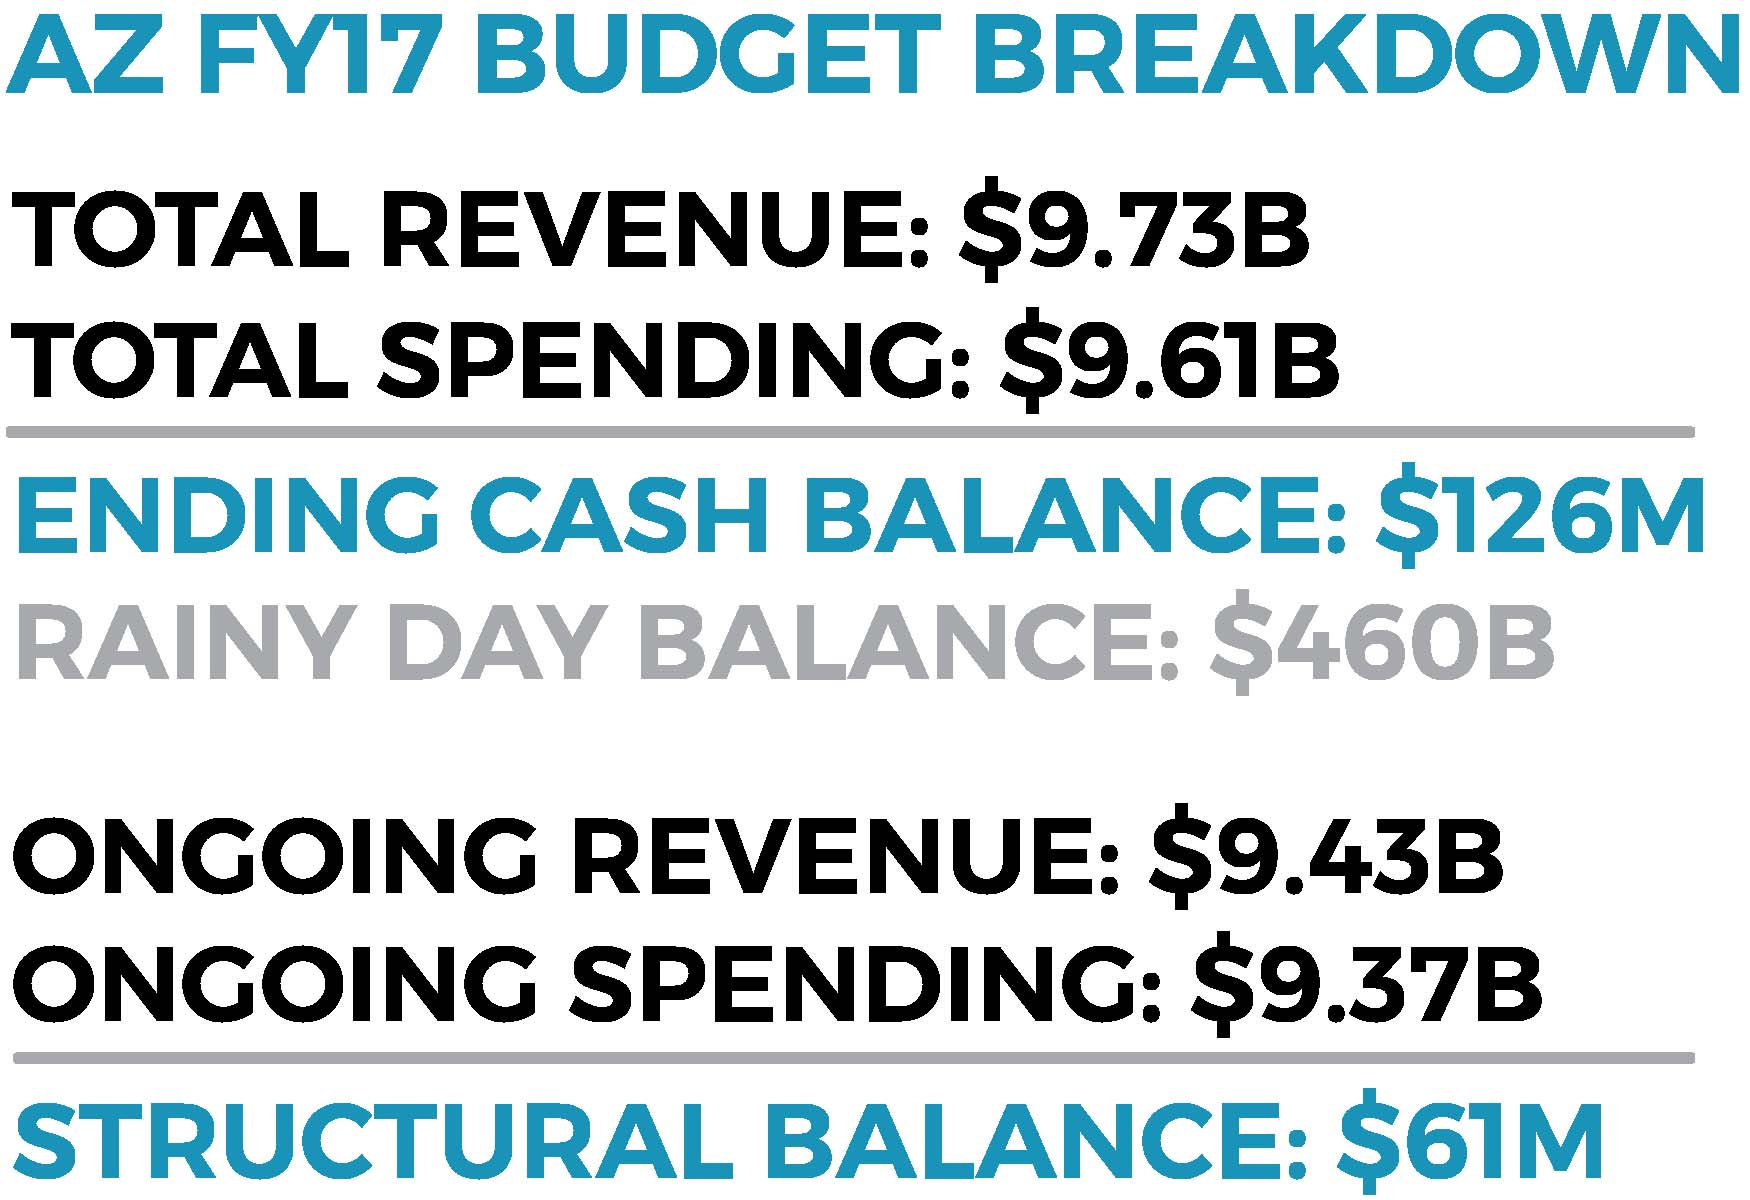 az budget